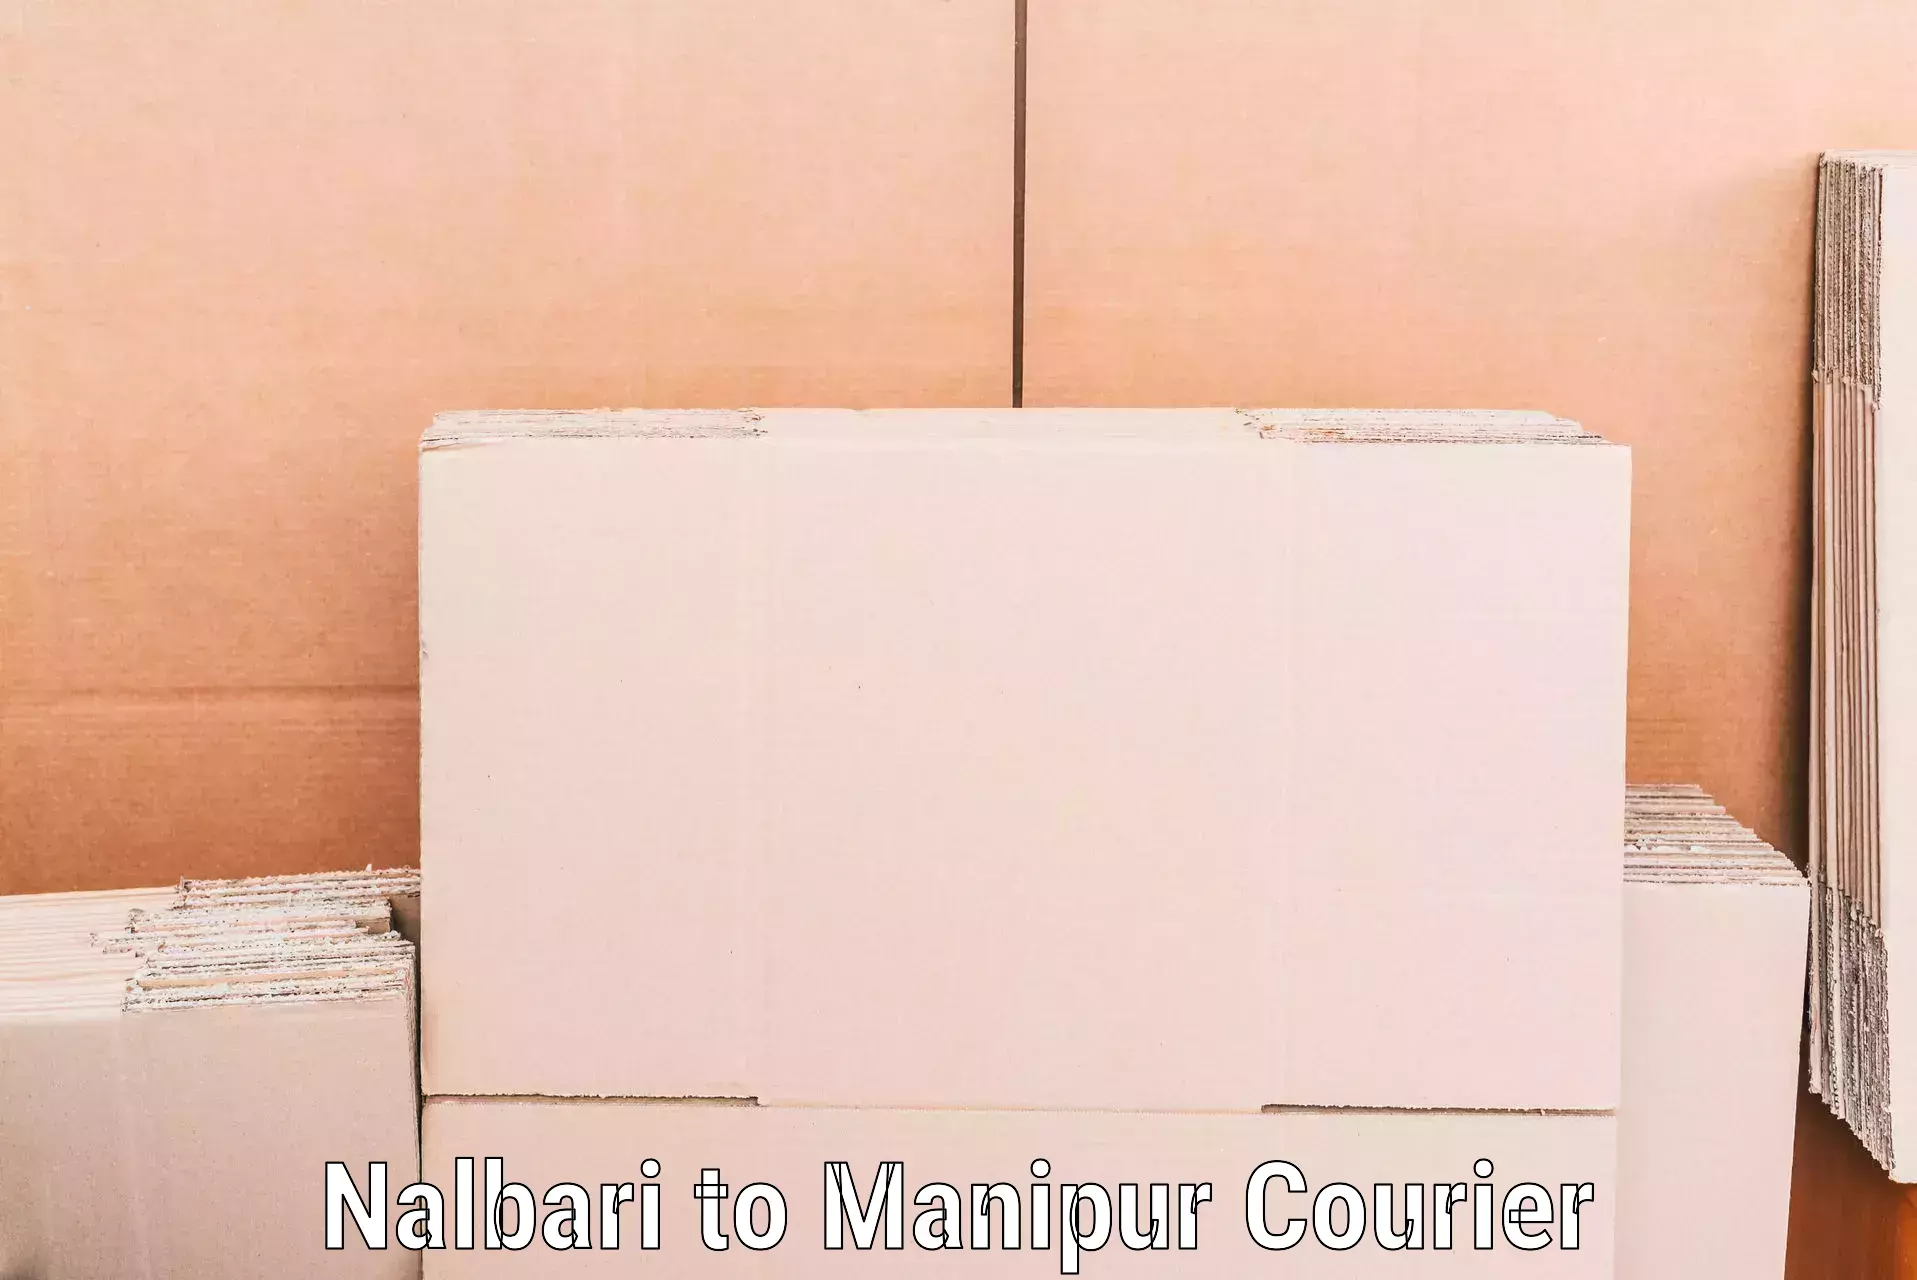 Moving and packing experts Nalbari to Jiribam